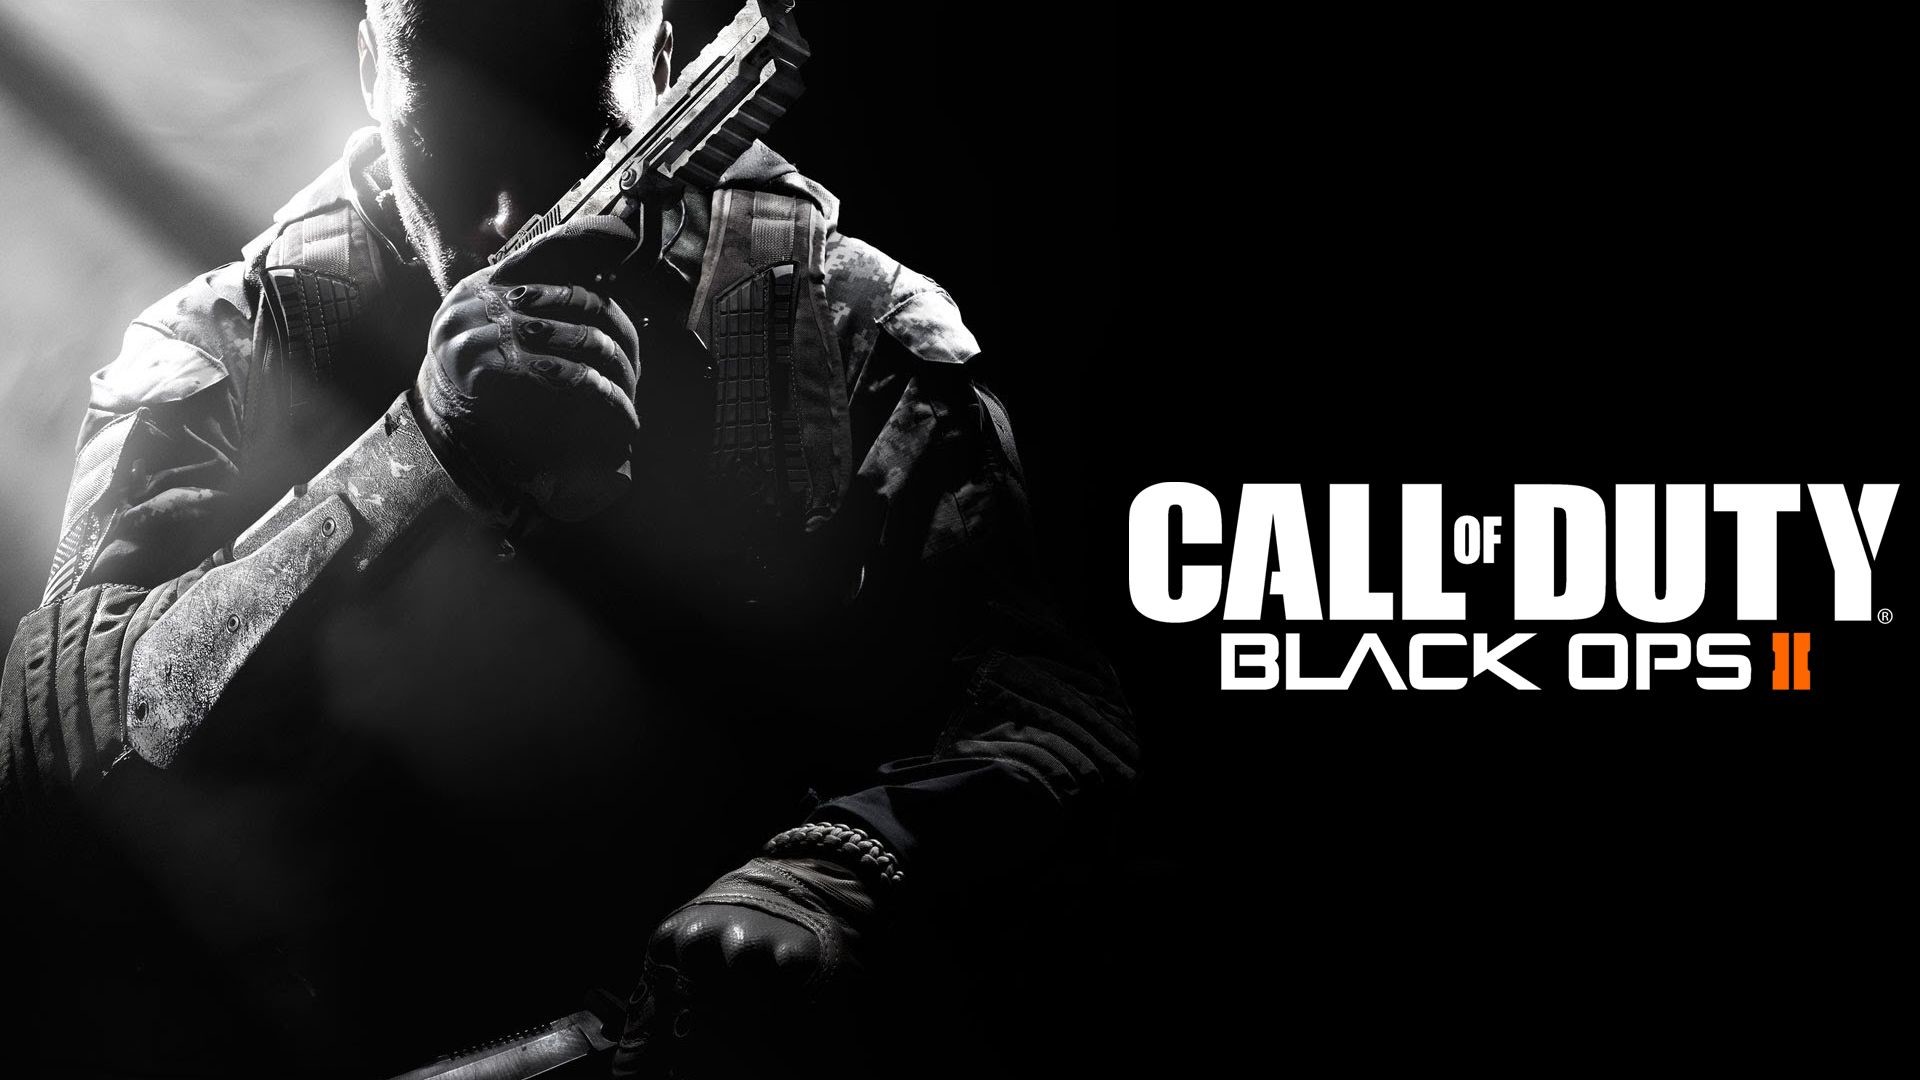 1920x1080 Call of Duty Black Ops II Ð½Ð°ÐºÐ¾Ð½ÐµÑÑÐ¾ Ð¿Ð¾Ð´Ð´ÐµÑÐ¶Ð¸Ð²Ð°ÐµÑ Ð¾Ð±ÑÐ°ÑÐ½ÑÑ 1080x-Black-Ops -II-Backgrounds-2.html